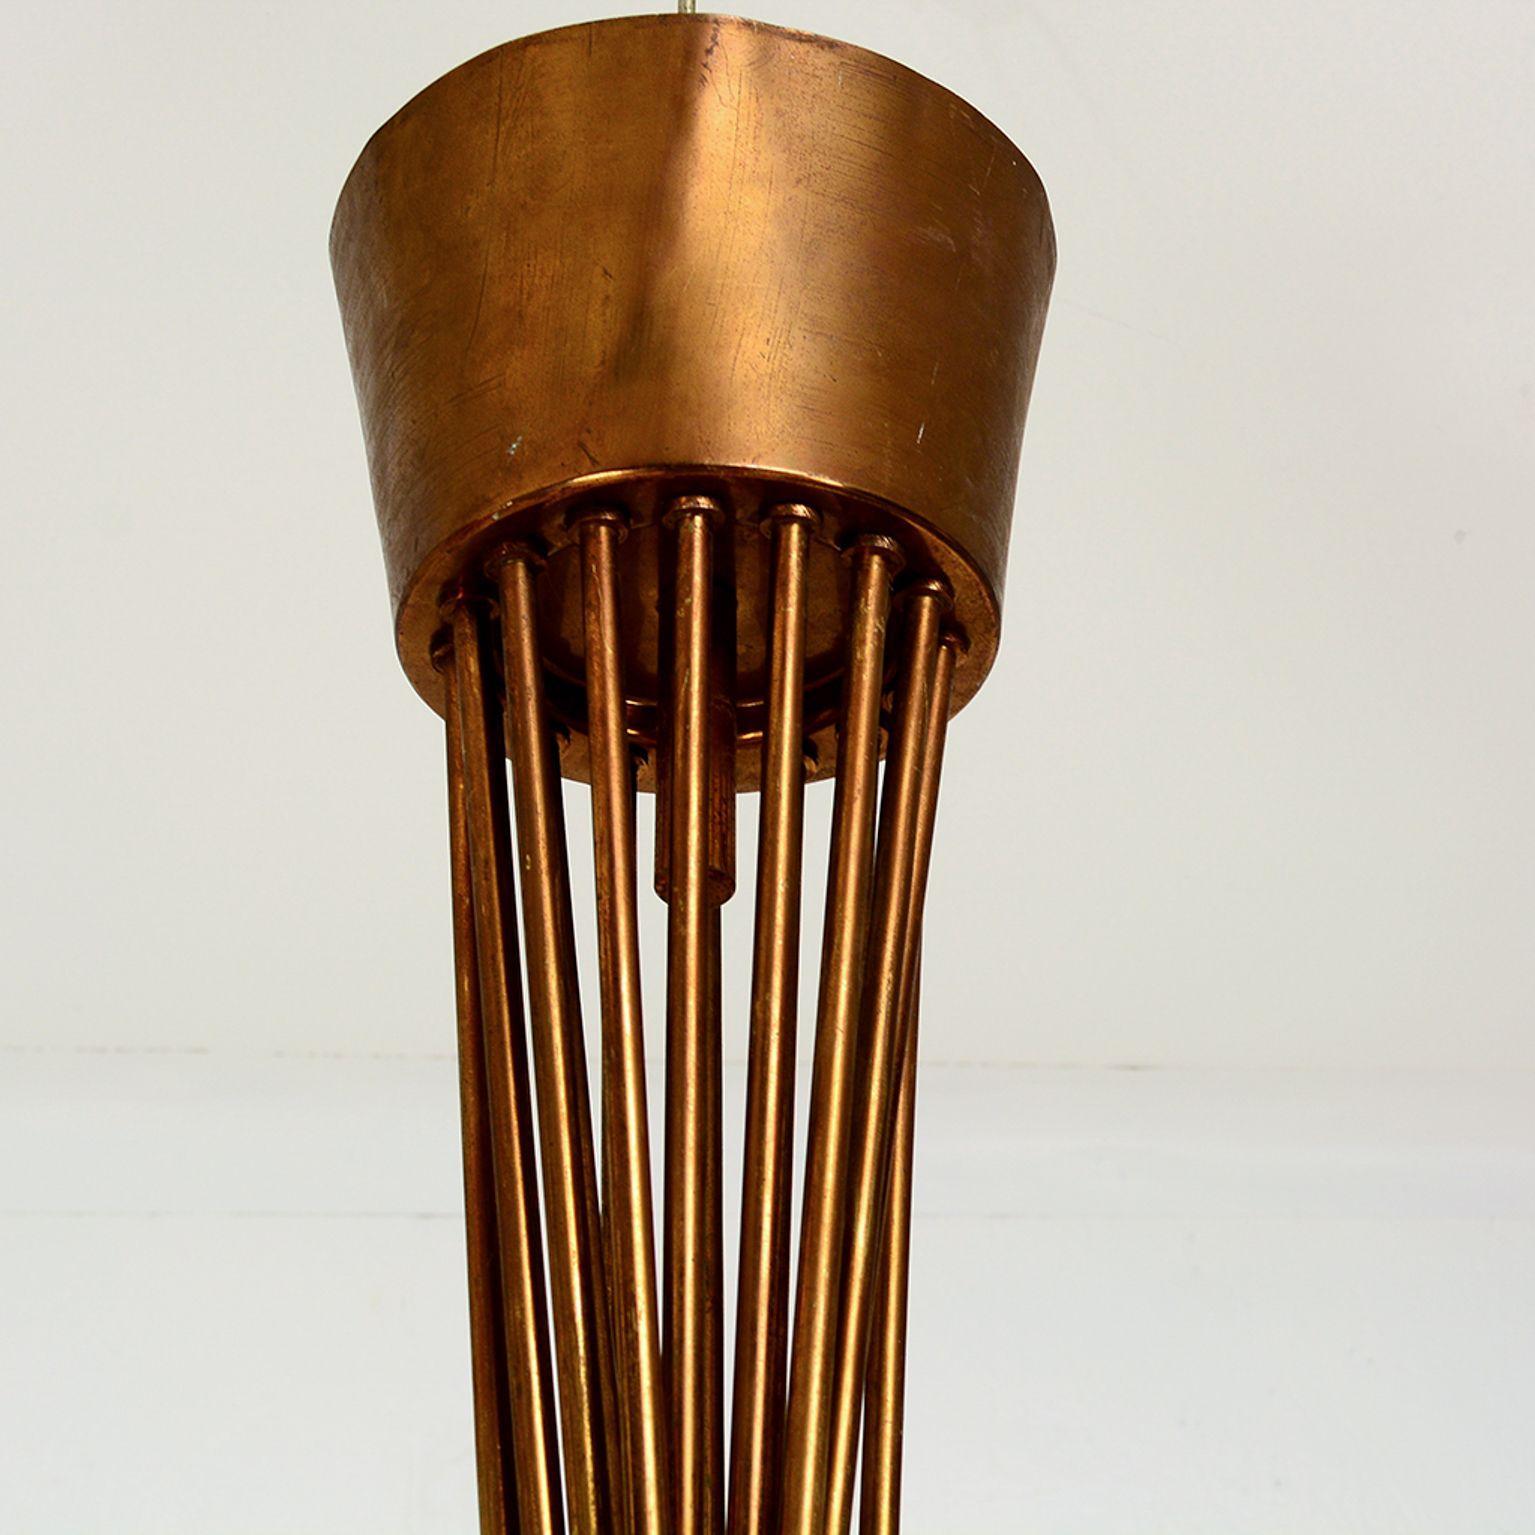 Pour votre considération : Plafonnier lustre italien des années 1950 attribué à Arreloduce.

Seize (16) bras sculpturaux sont reliés à la verrière. Les abat-jour sont fabriqués en aluminium filé peint en ivoire.

 Attribué à Angelo Lelli pour